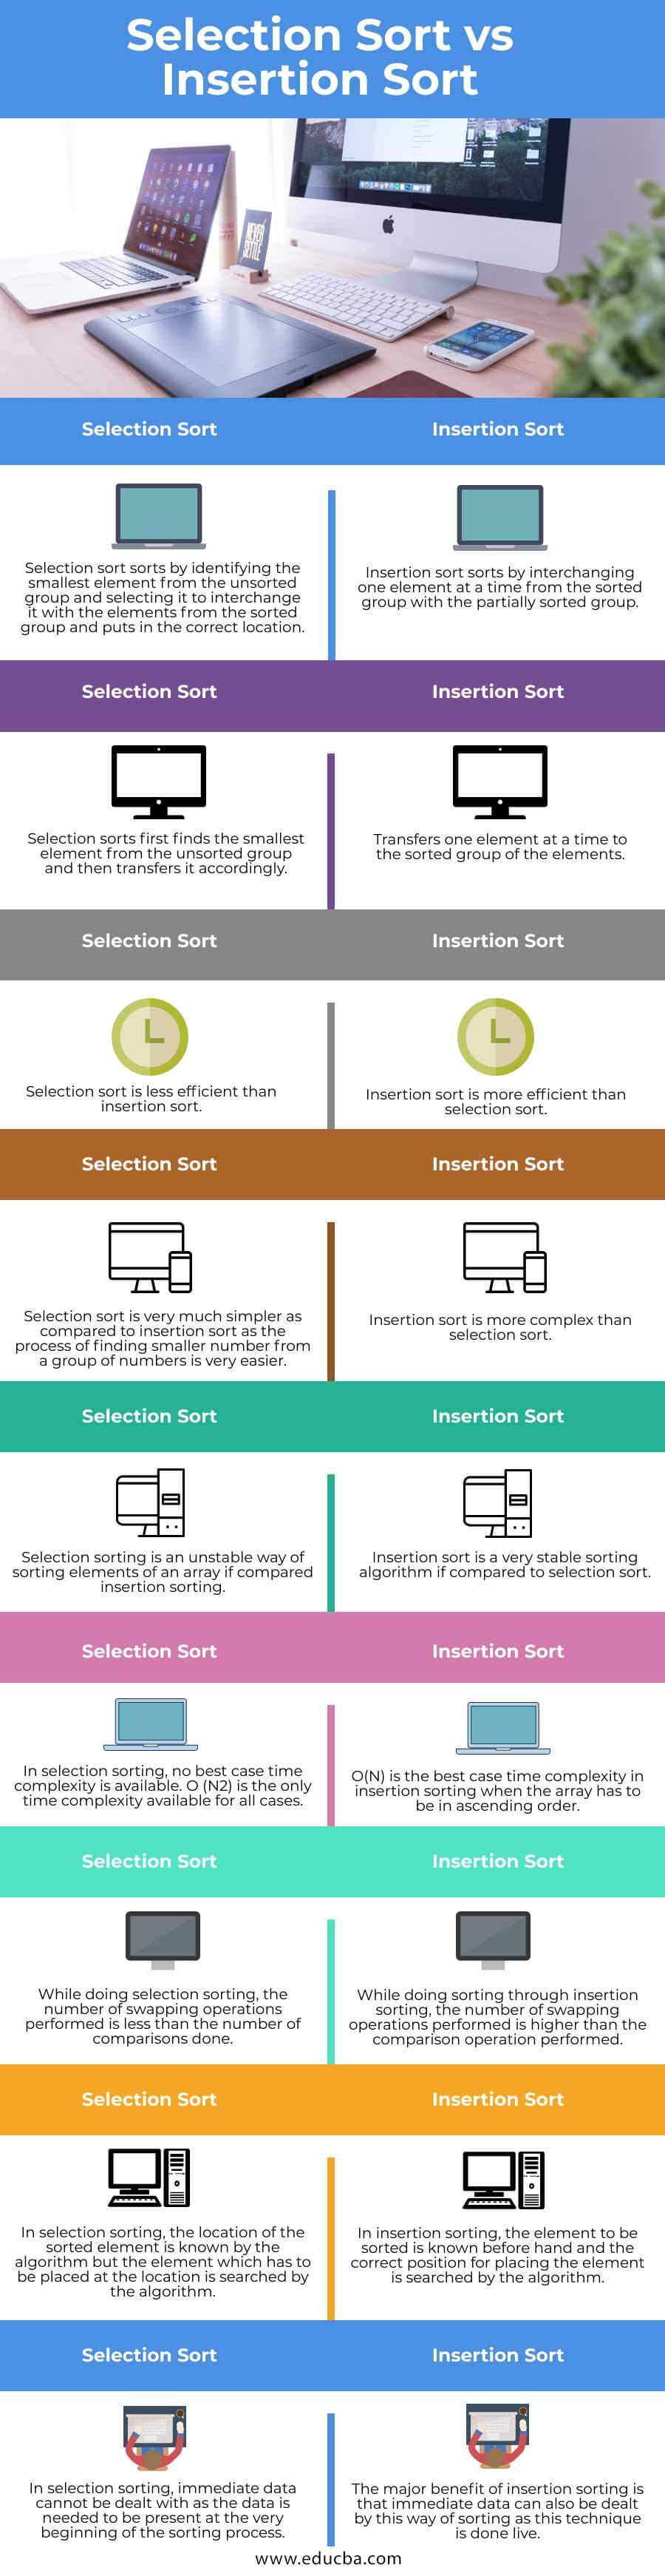 Selection-Sort-vs-Insertion-Sort-info